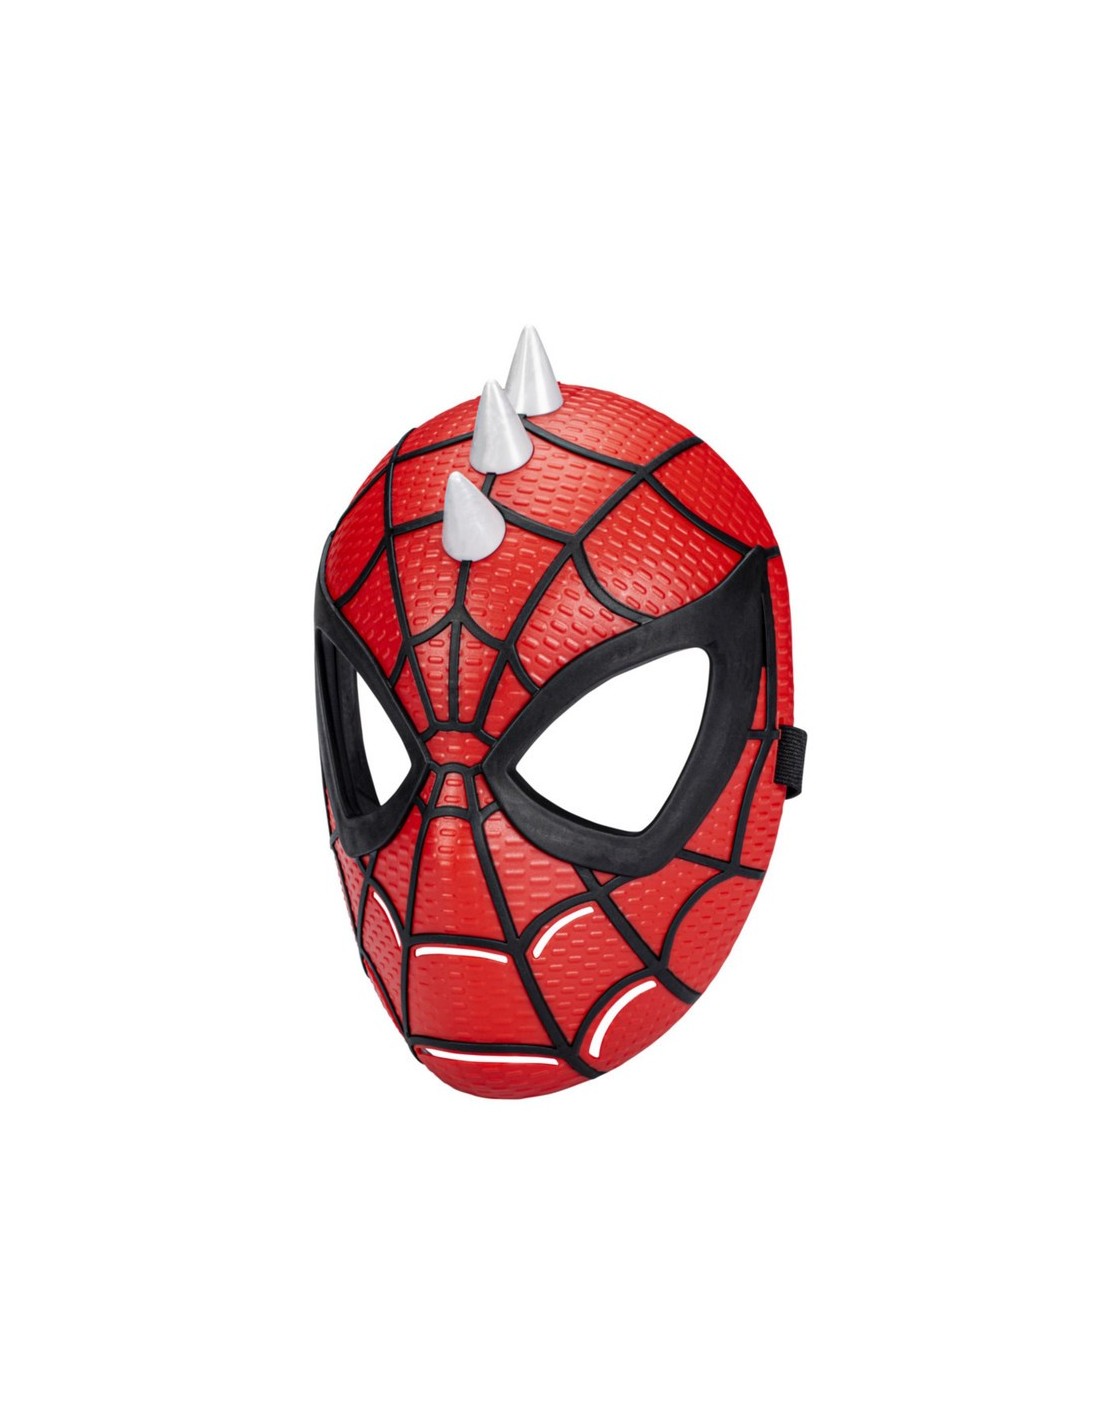 Mascara De Spiderman Niños + Lanza Telarañas Hombre Araña